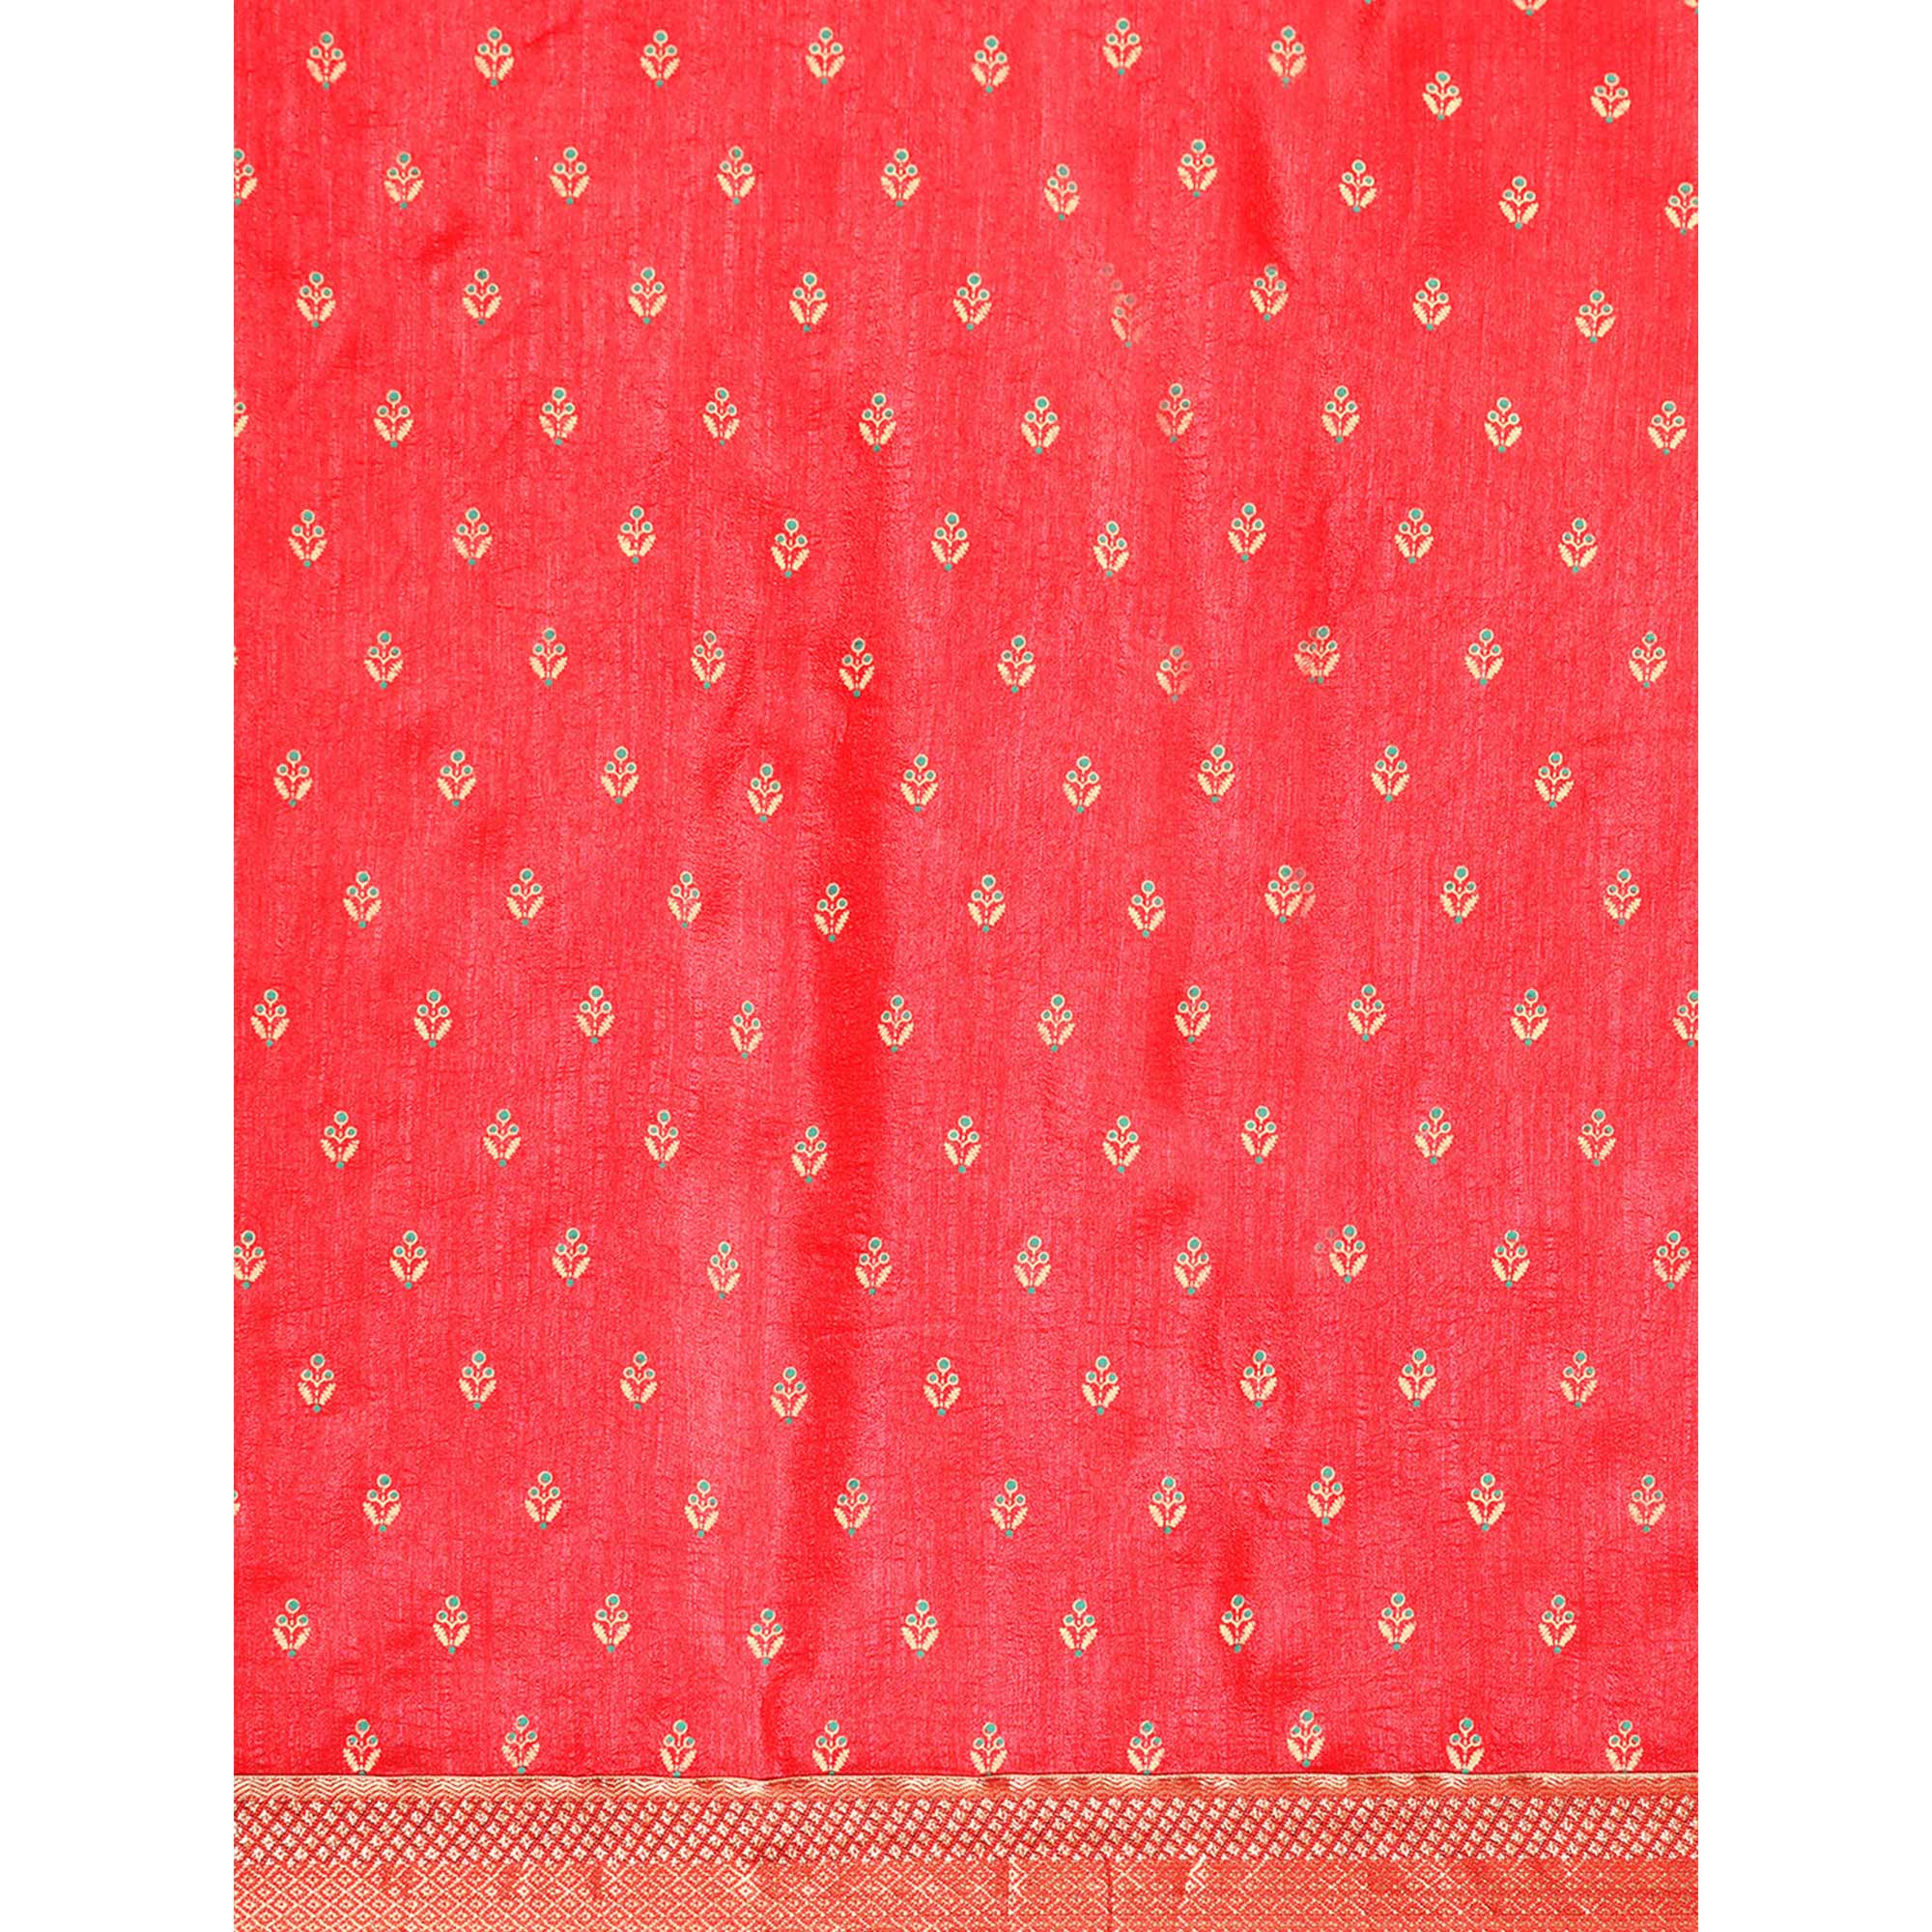 Gajri Pink Floral Printed Vichitra Silk Saree With Tassels